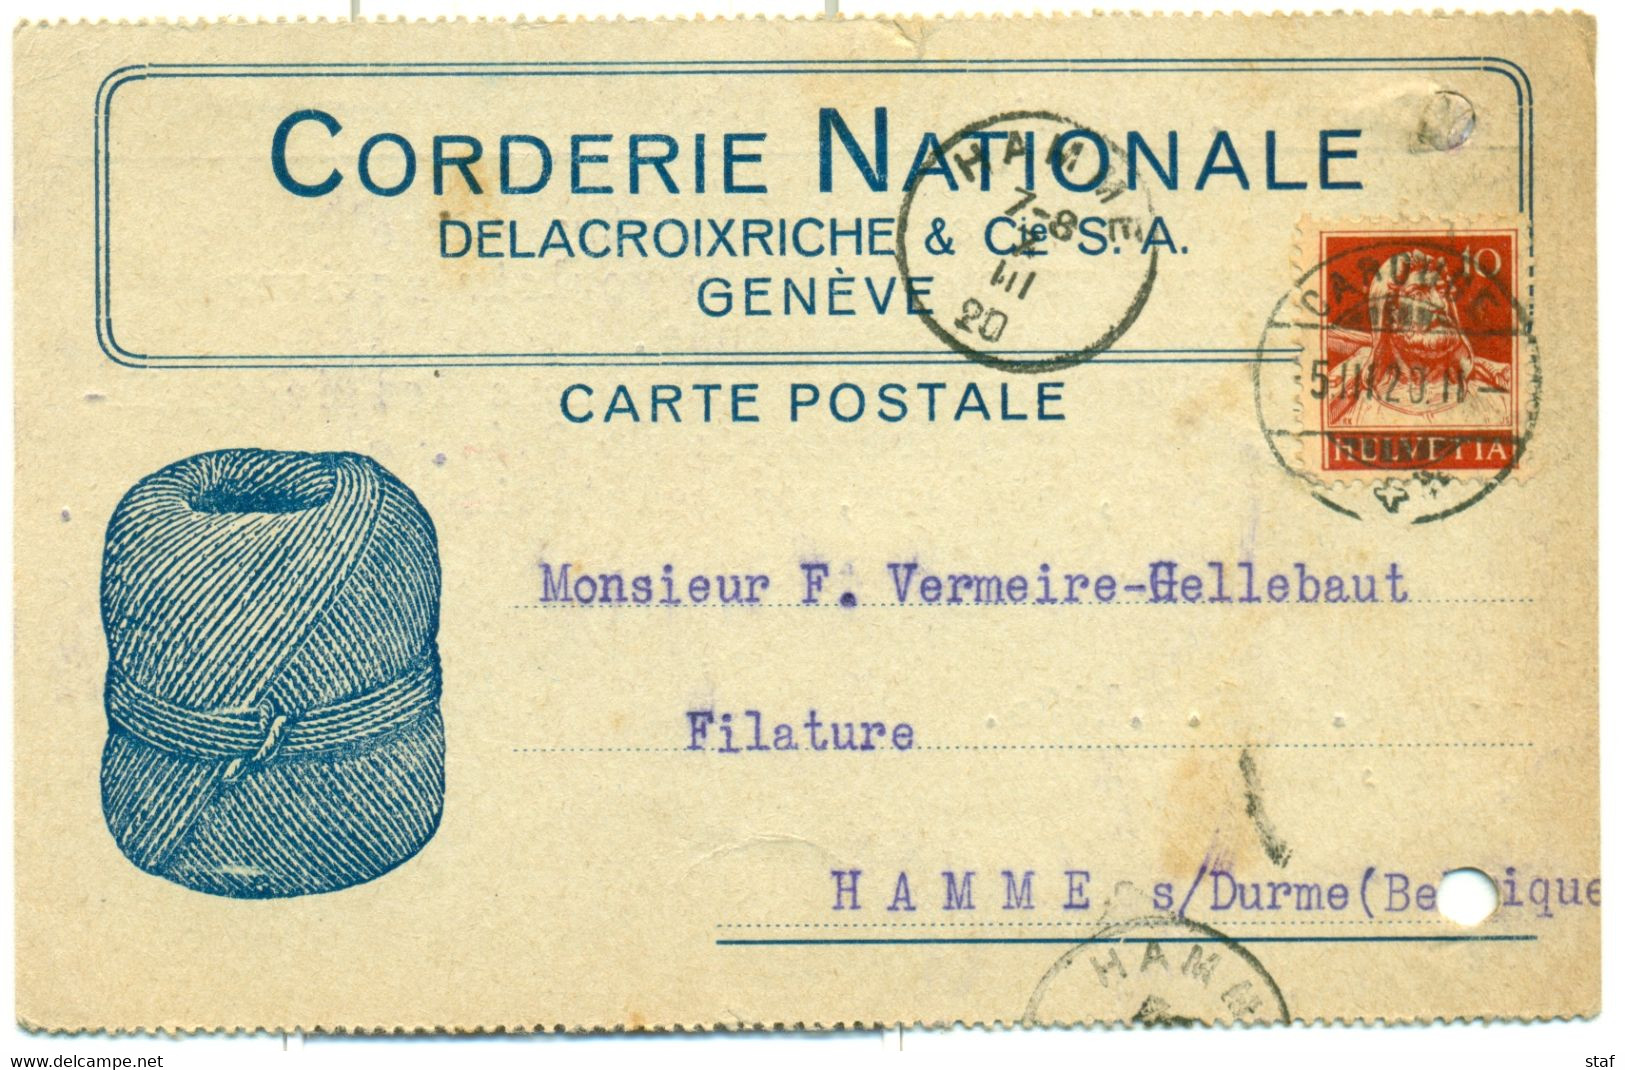 Carte Postale De La Corderie Nationale  Delacroixriche & Cie à Genève - Cachet De La Poste Caroube - 1920 !! - Schweiz